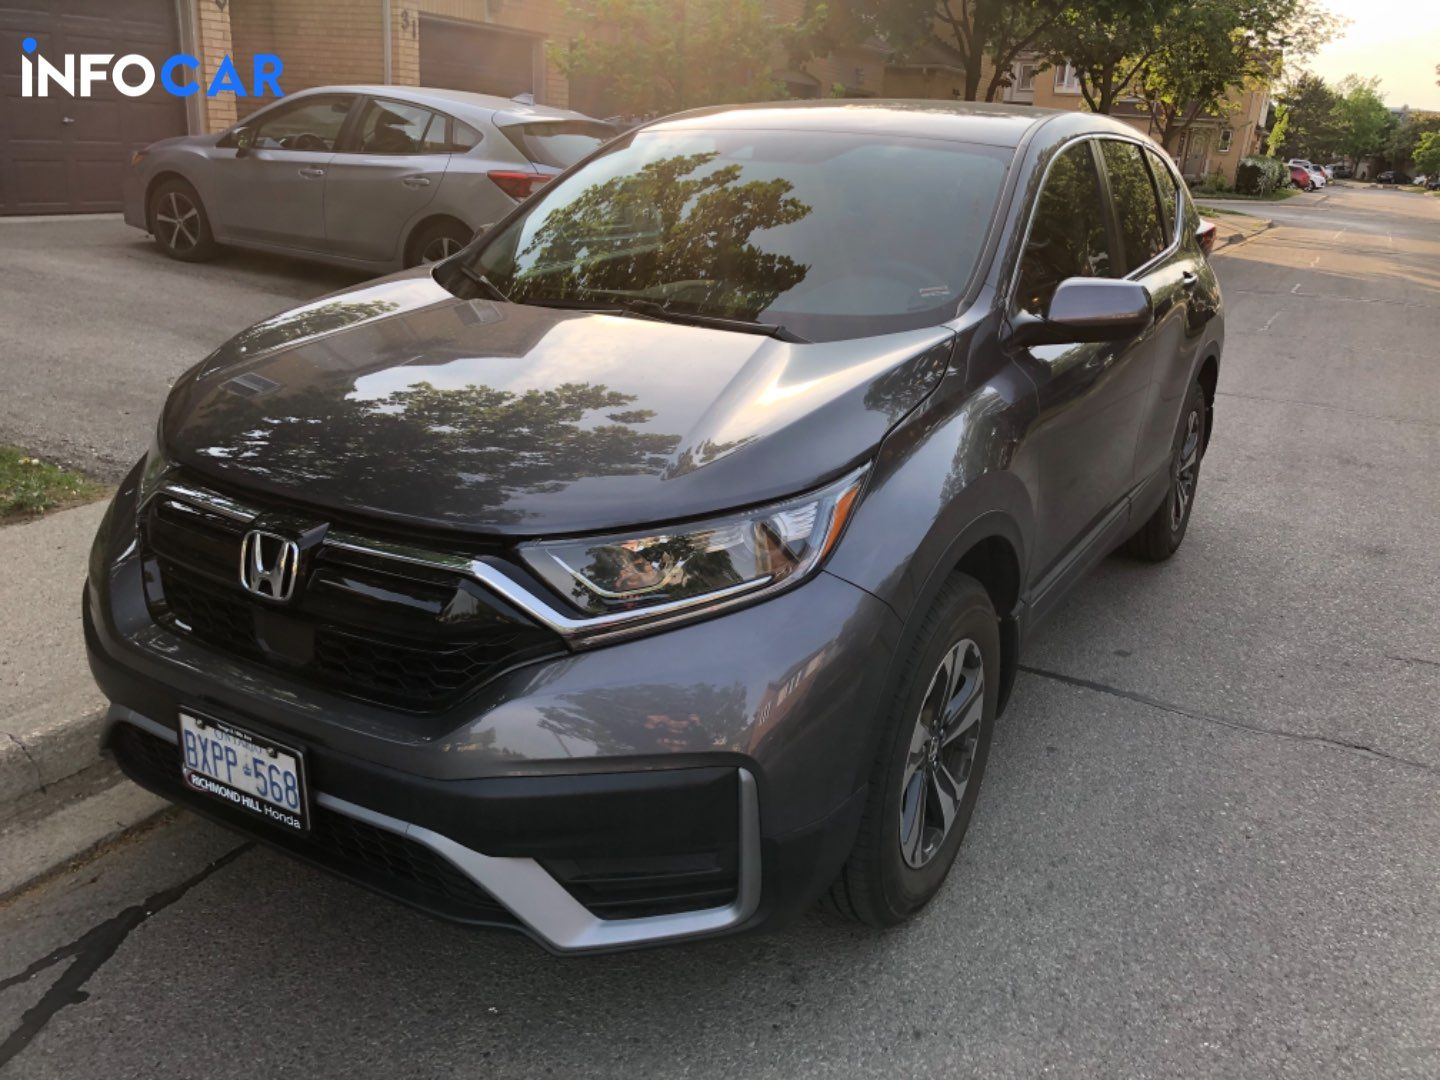 2020 Honda CR-V LX - INFOCAR - Toronto Auto Trading Platform